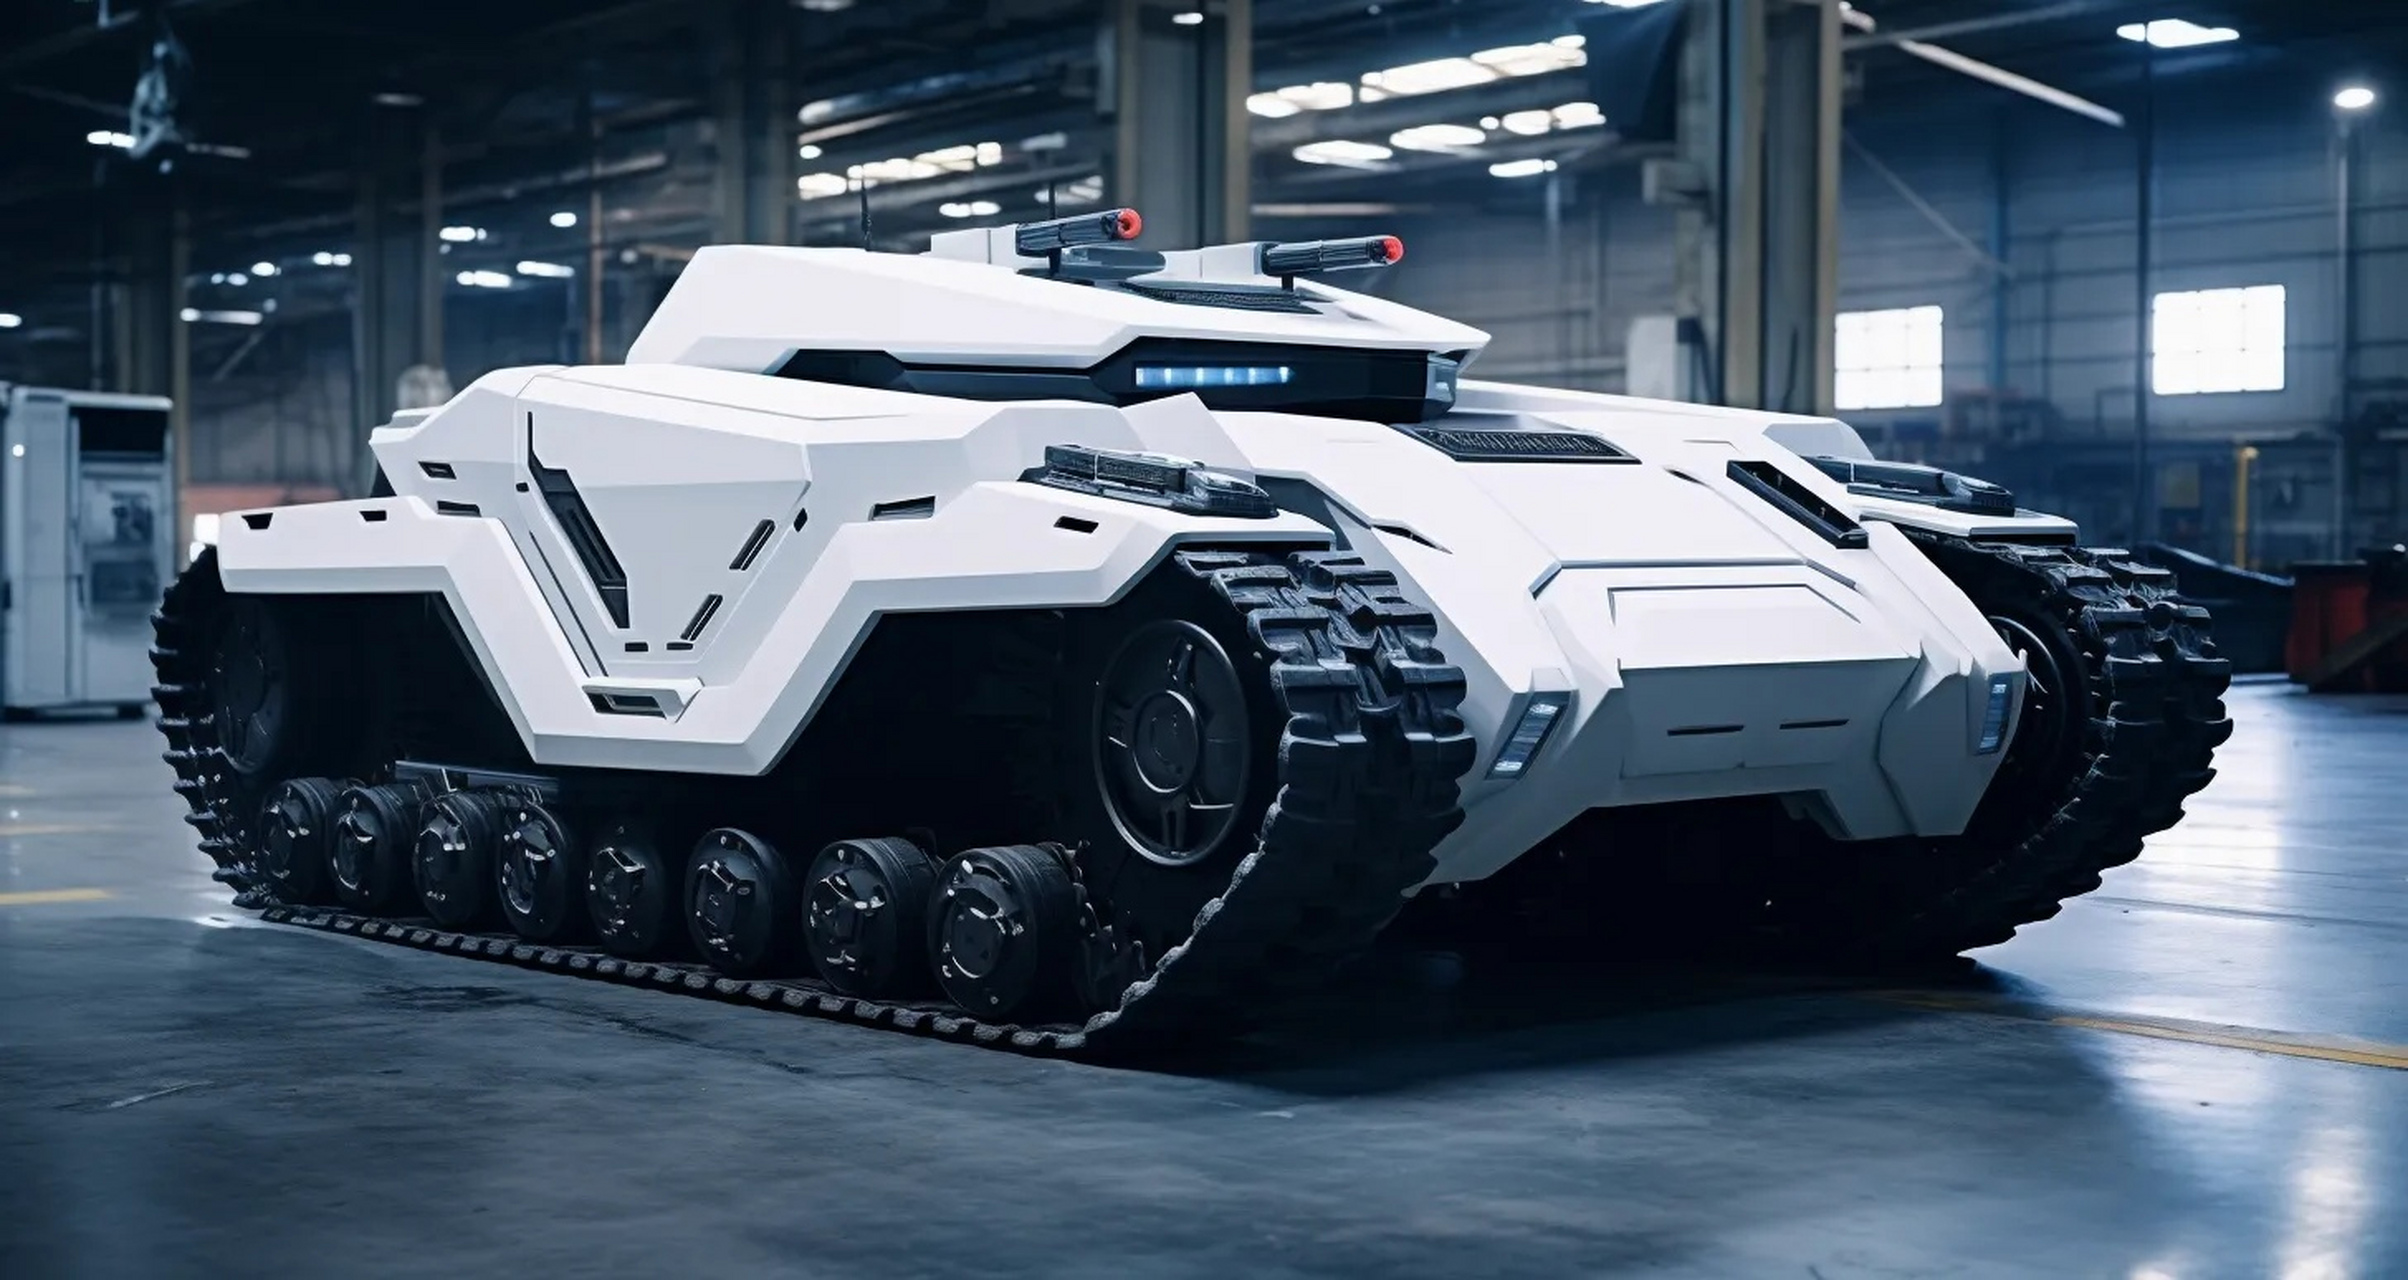 一组ai生成的充满科技感的装甲车辆作品,白色的外甲显得科幻感十足